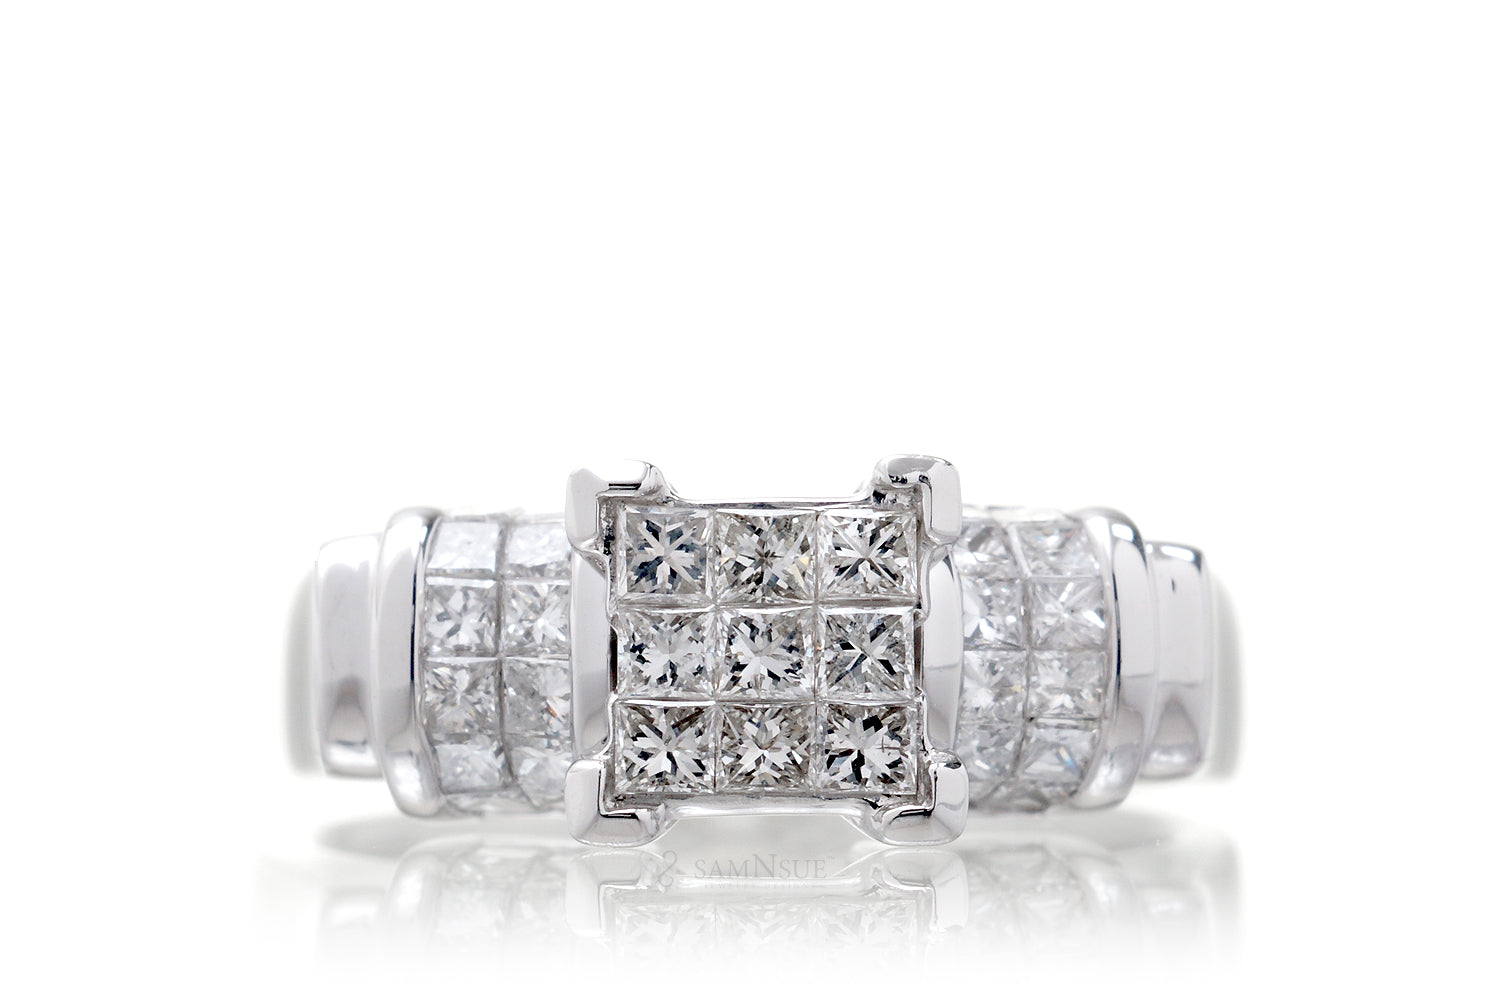 The Kyoto Princess Diamond Ring